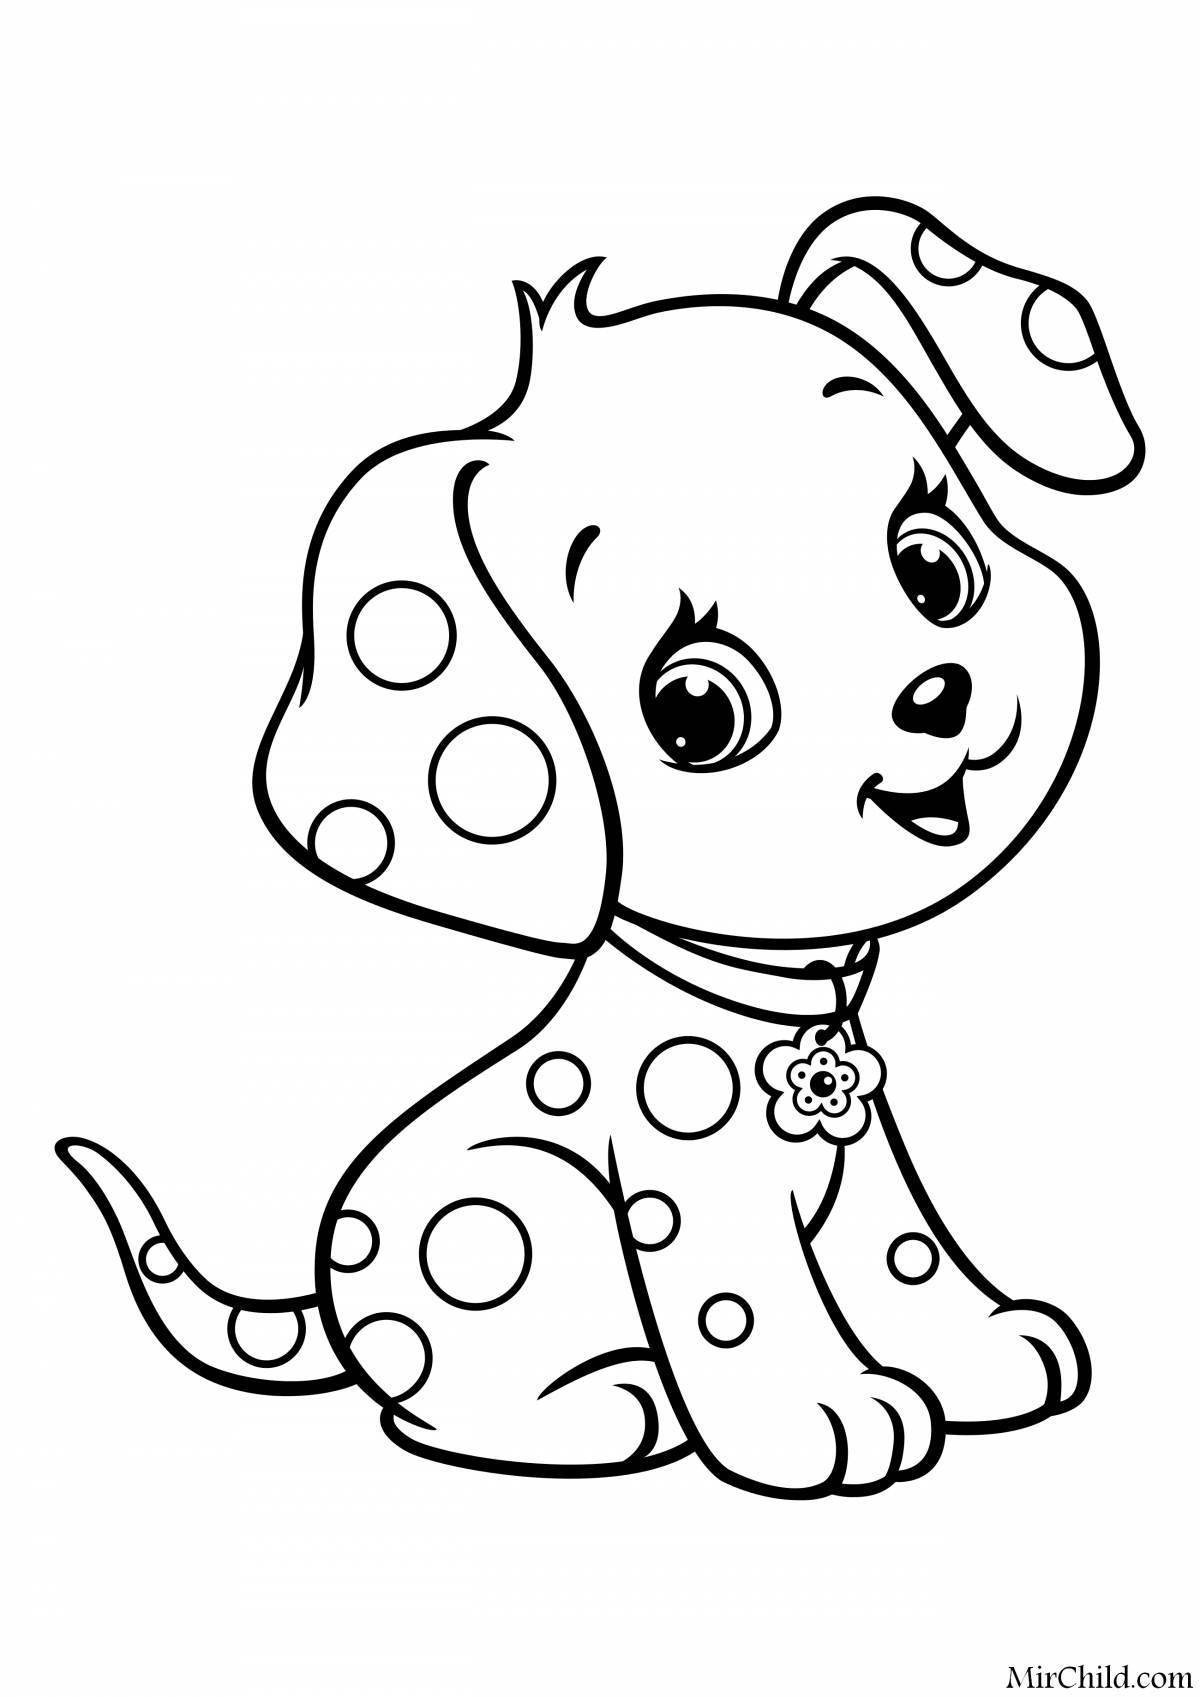 Онлайн раскраска собаки - картинка для детей со щеночком